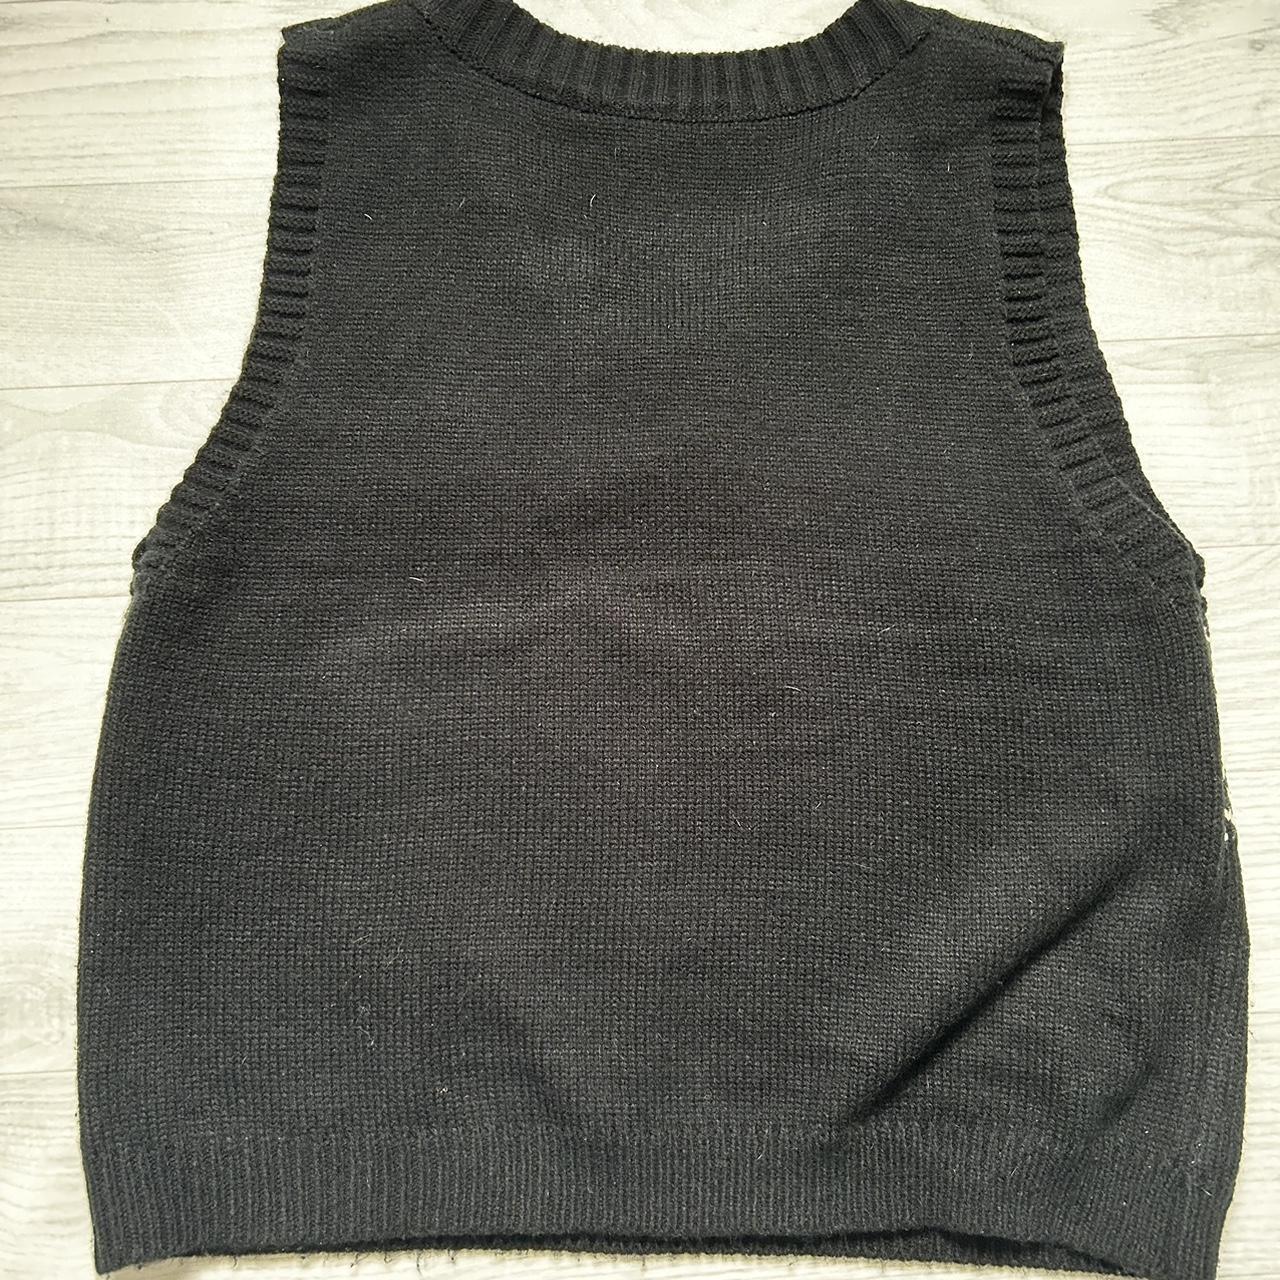 80’s Style Black Sweater Vest Worn A Few Times Size... - Depop